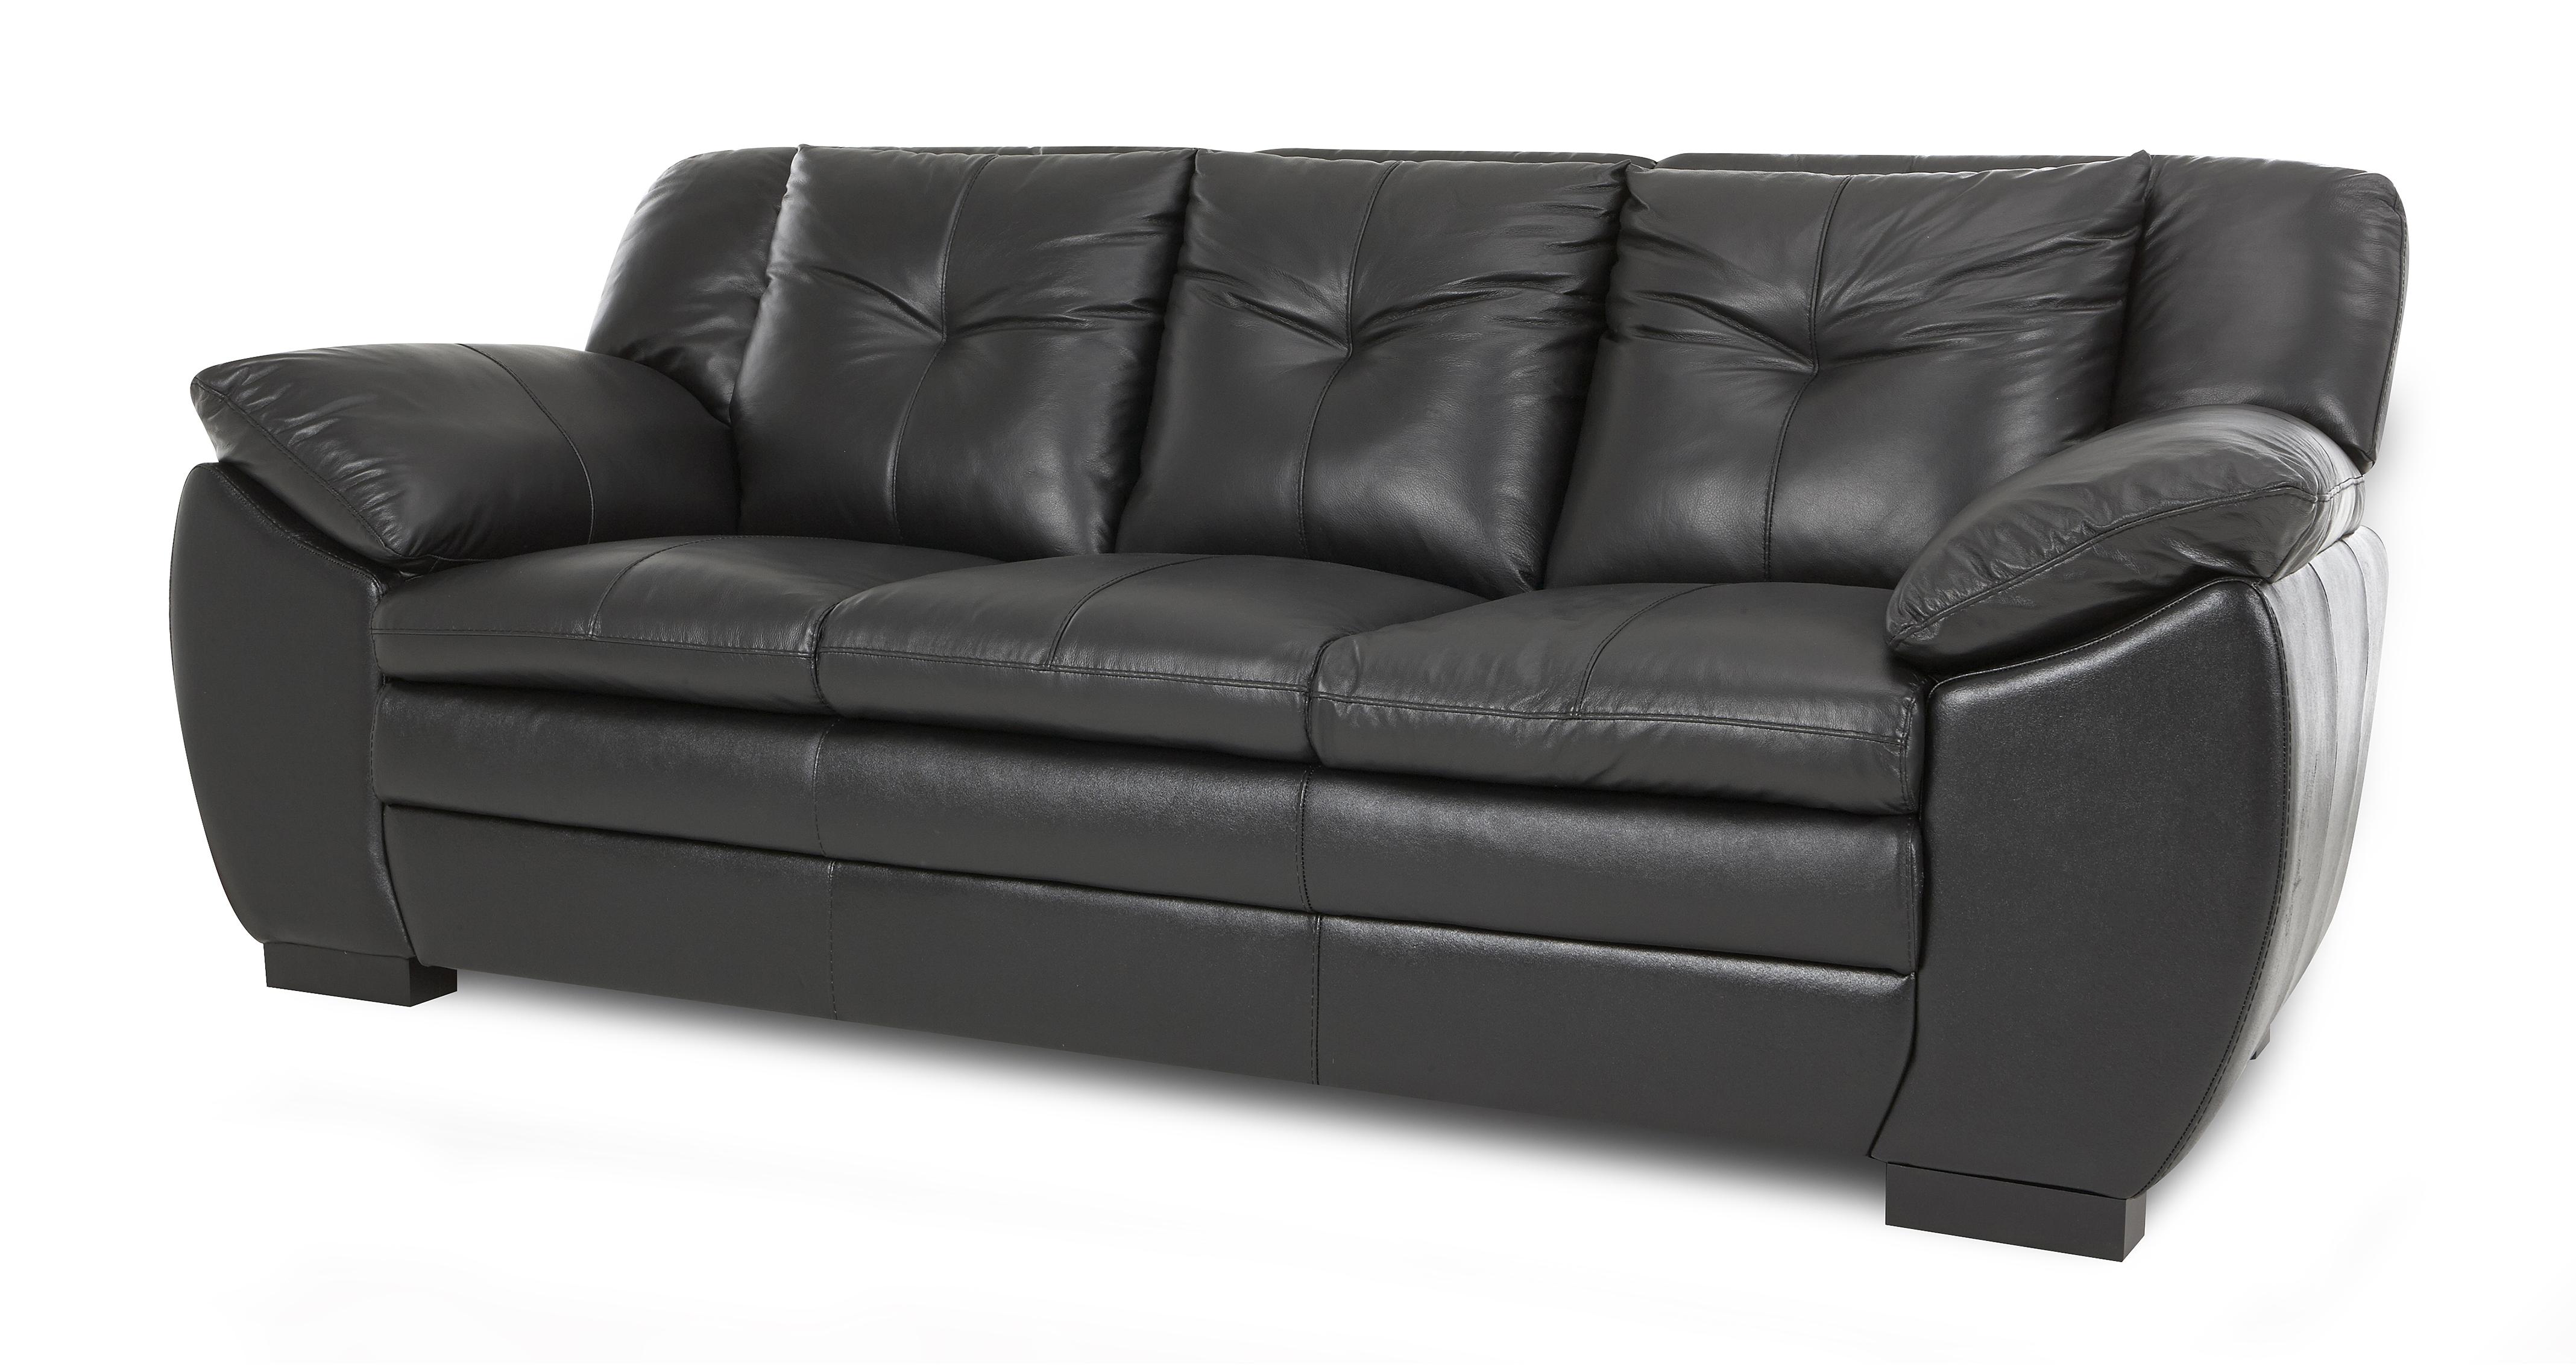 dfs leather sofa complaints